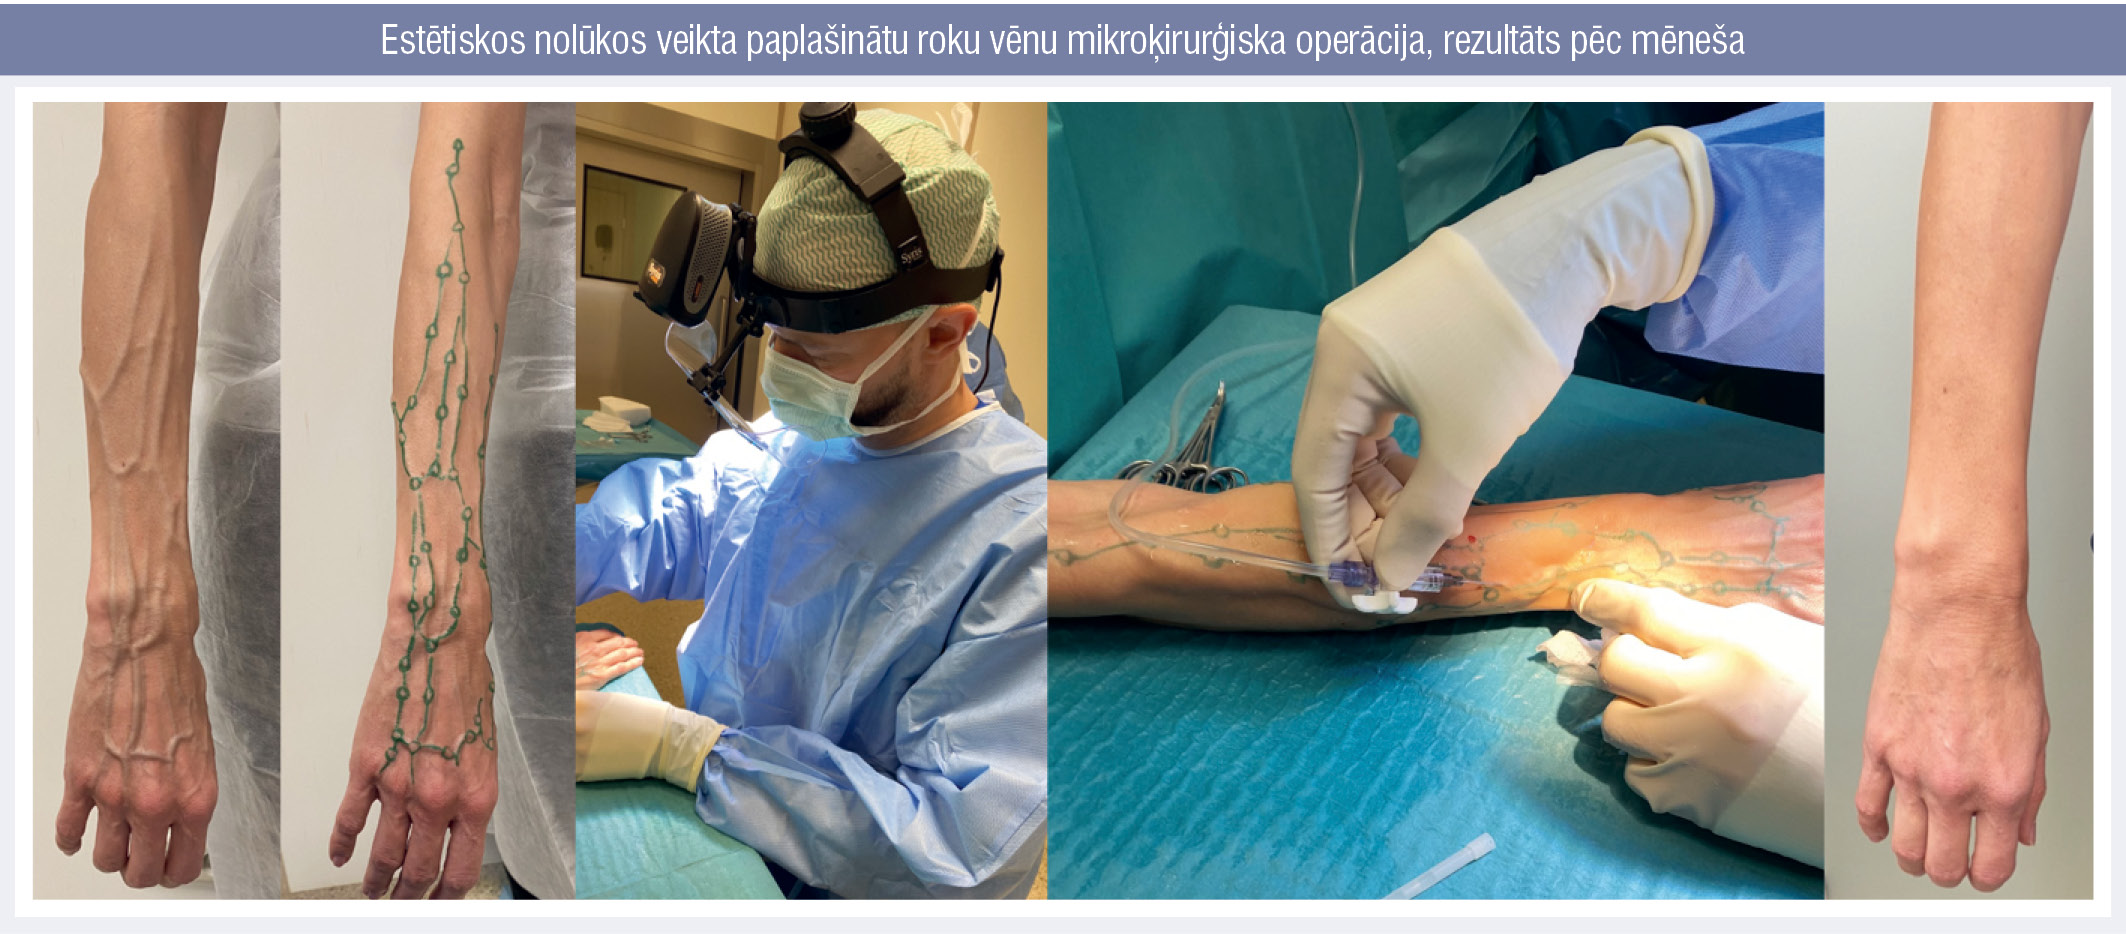 Estētiskos nolūkos veikta paplašinātu roku vēnu mikroķirurģiska operācija, rezultāts pēc mēneša